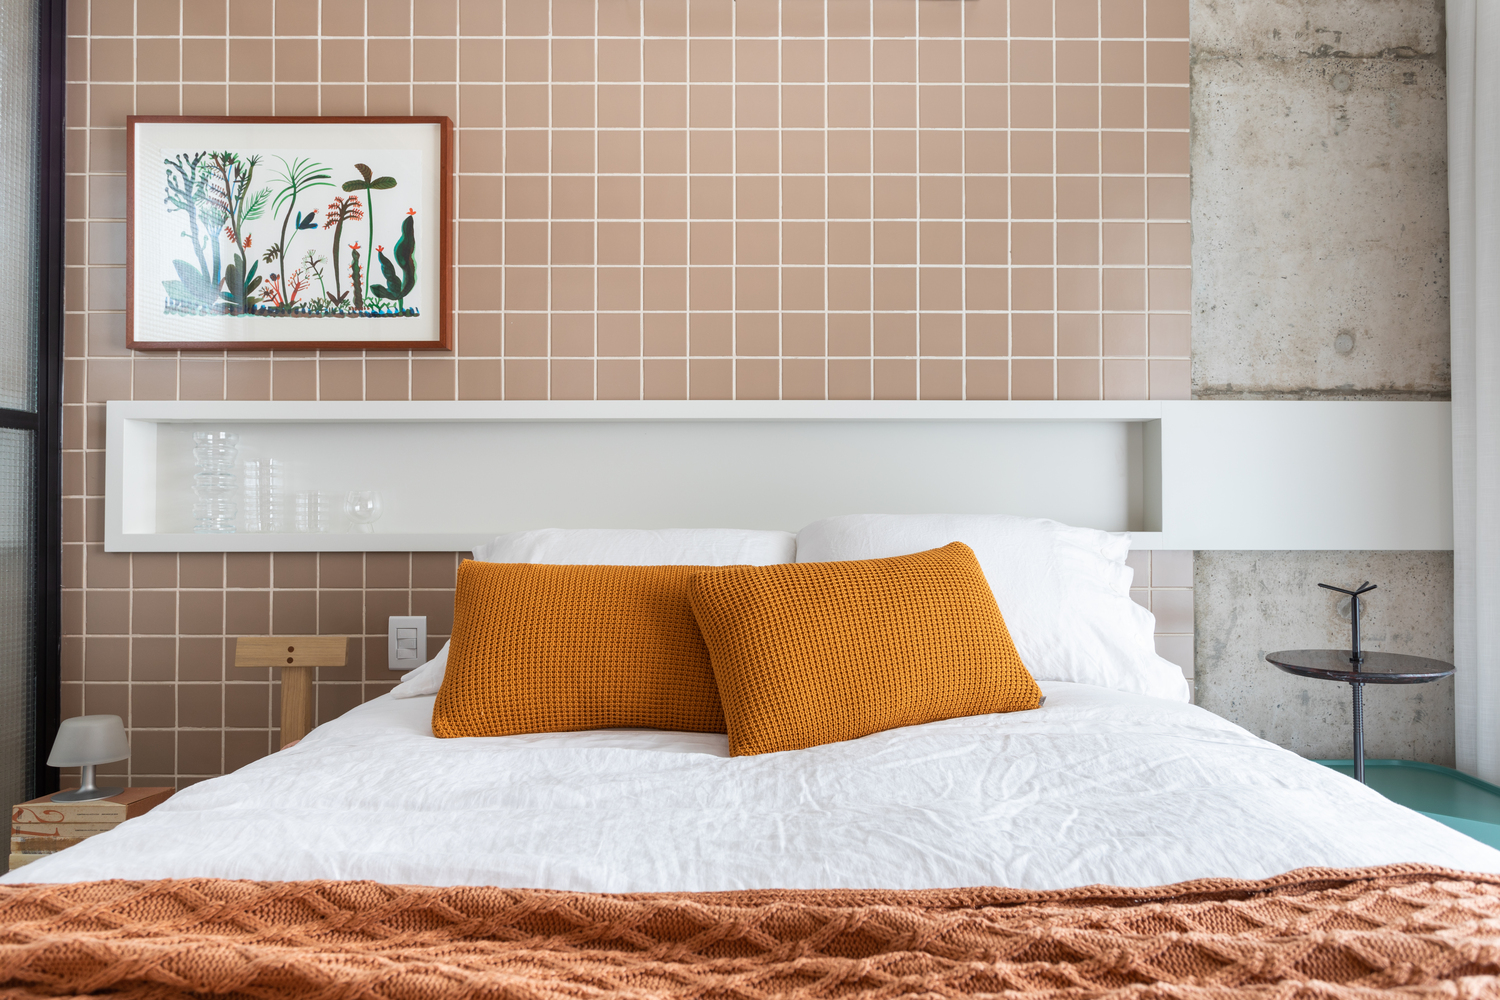 Hình ảnh một góc phòng ngủ với tường ốp gạch màu hồng đất, xen kẽ mảng tường bê tông, tranh treo tường, gối tựa màu vàng nổi bật